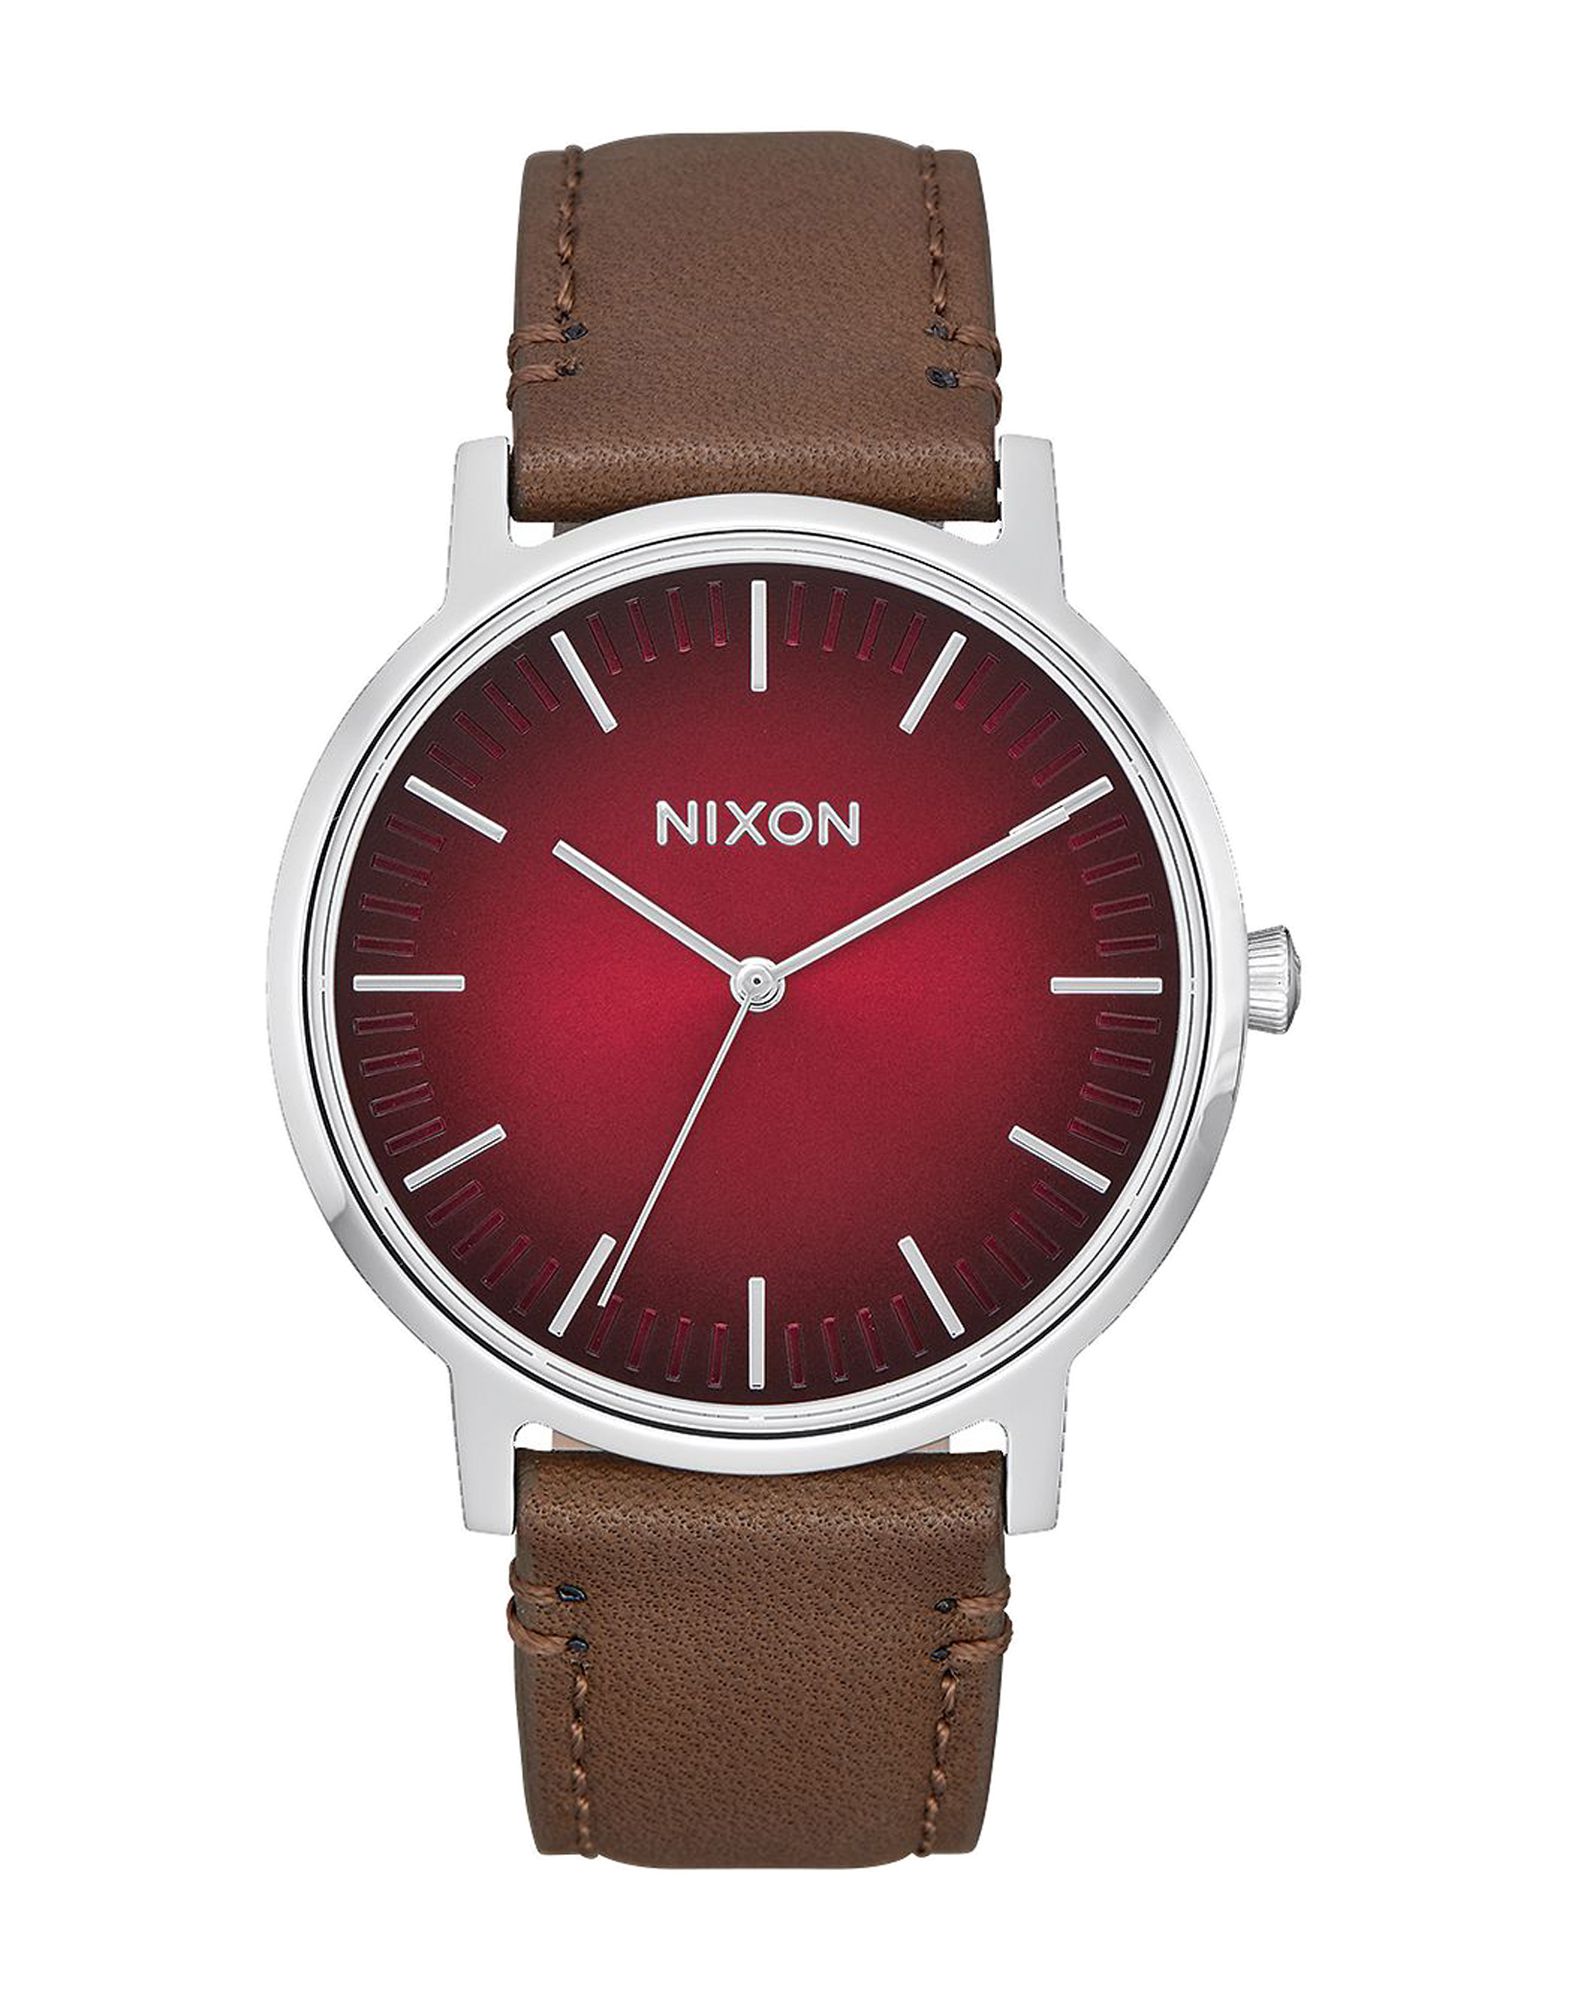 《送料無料》NIXON Unisex 腕時計 ボルドー ステンレススチール / 革 A1058 PORTER LEATHER